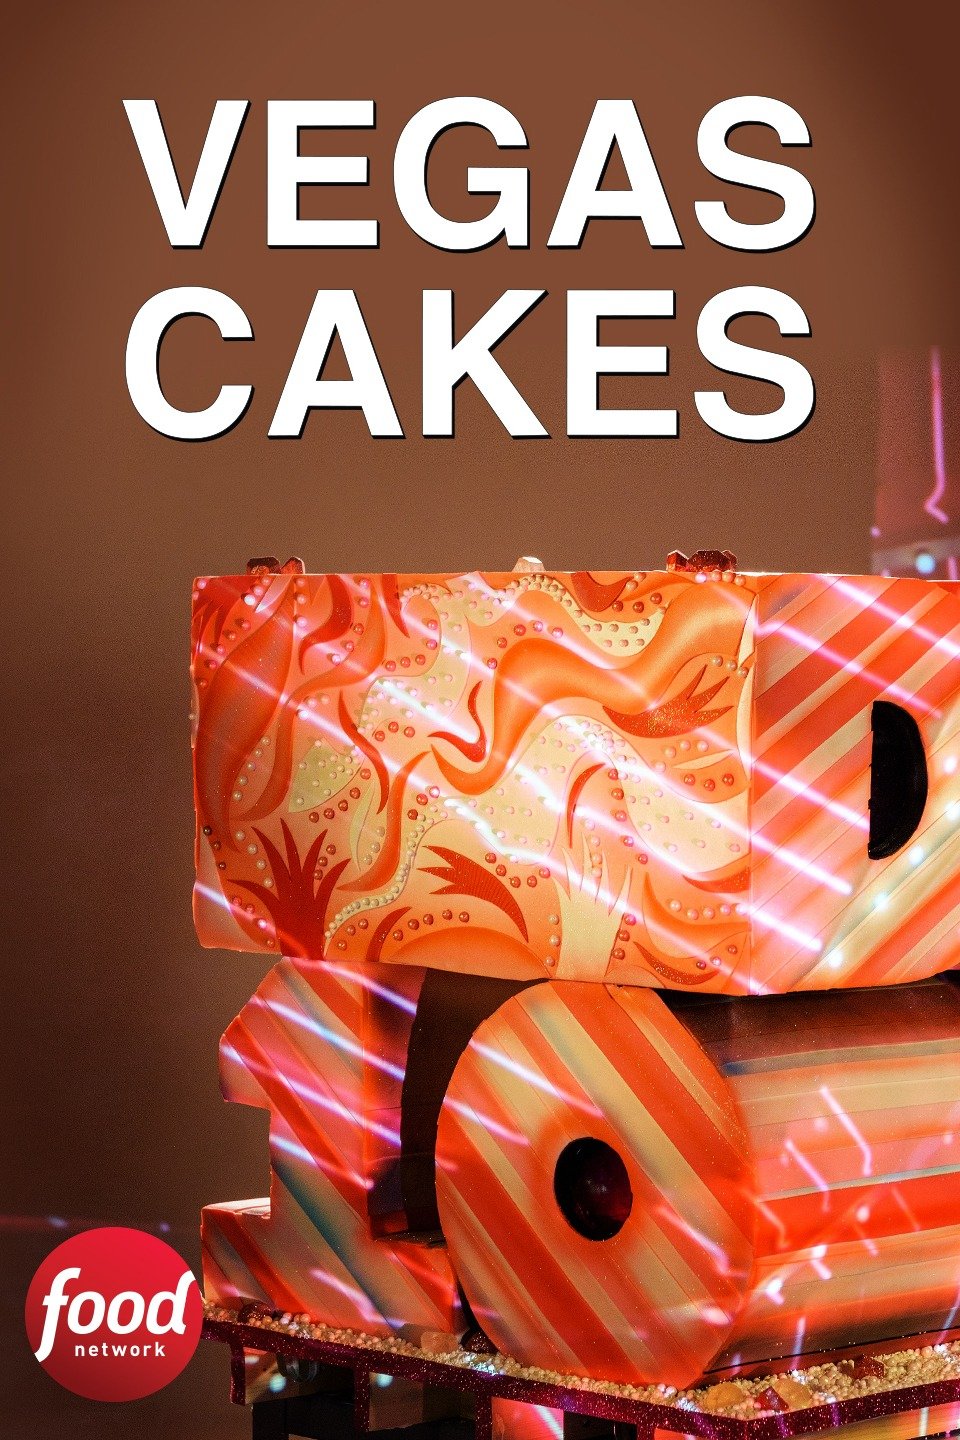 Vegas Cakes - YouTube